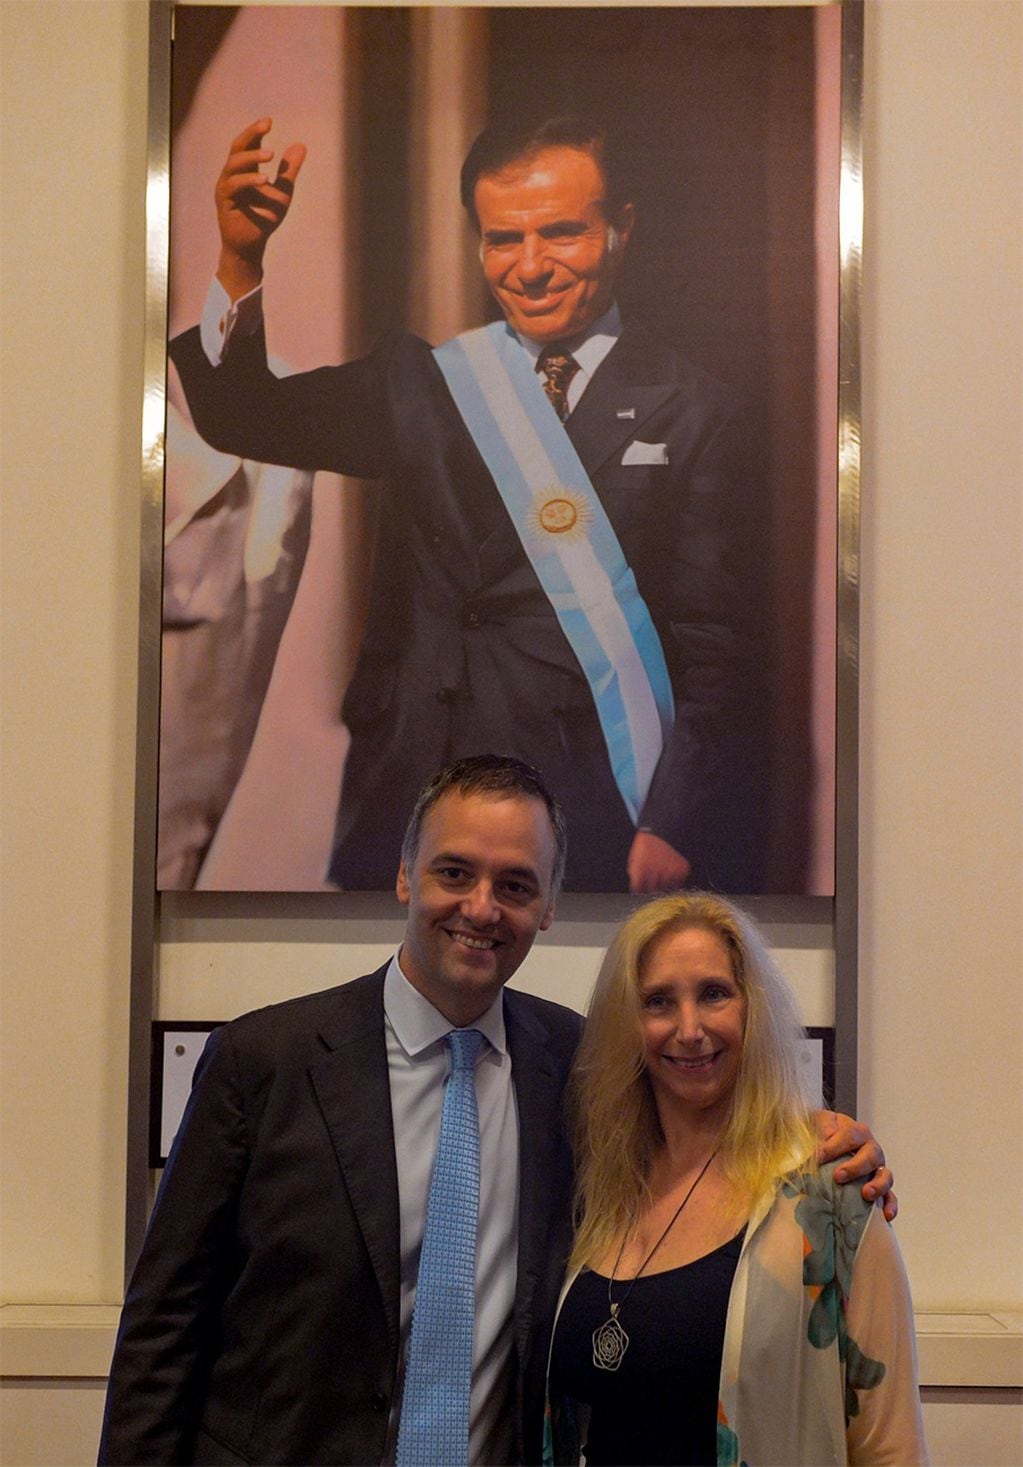 El vocero presidencial Manuel Adorni y la secretaria general de la presidencia Karina Milel posan mostrando el cuadro de Carlos Saúl Menem en el Salón de los Próceres de Casa Rosada (Manuel Adorni/X).